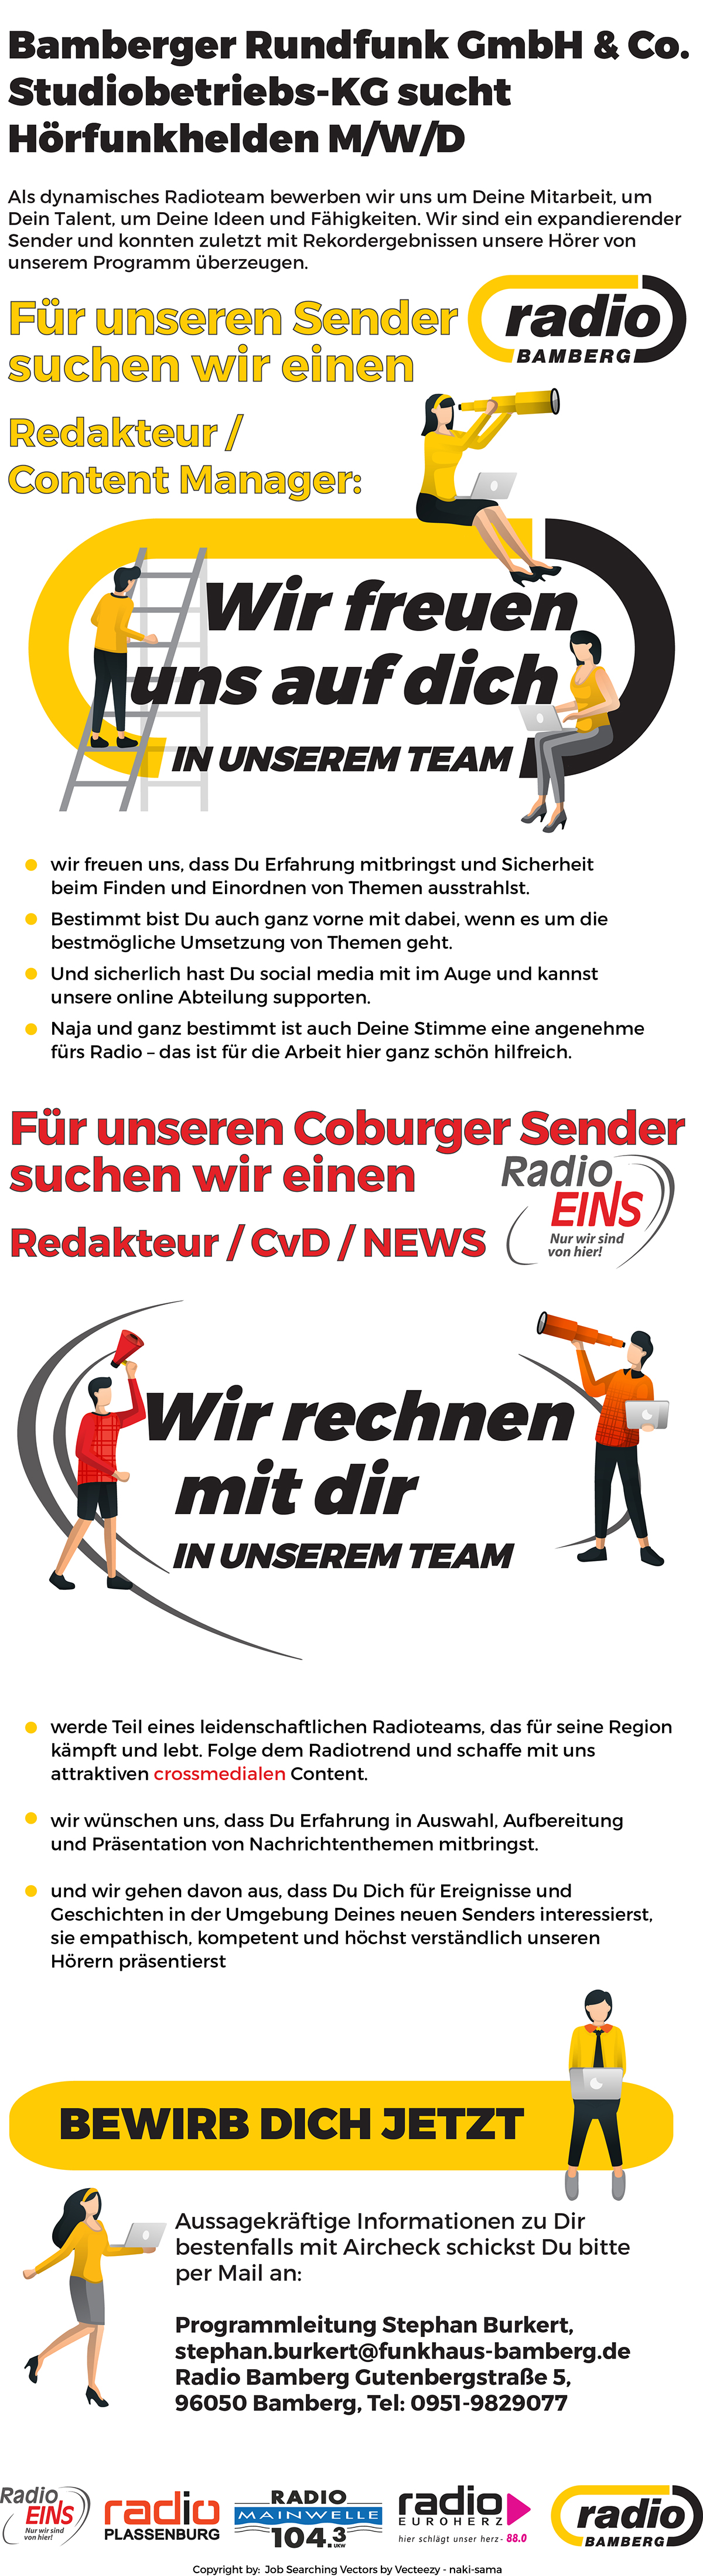 Funkhaus Bamberg sucht Hörfunk-Helden (m/w/d): eine/ Redakteur/in / Content Manager/in für Radio Bamberg und eine/n Redakteur/n / CvD / News für Radio EINS